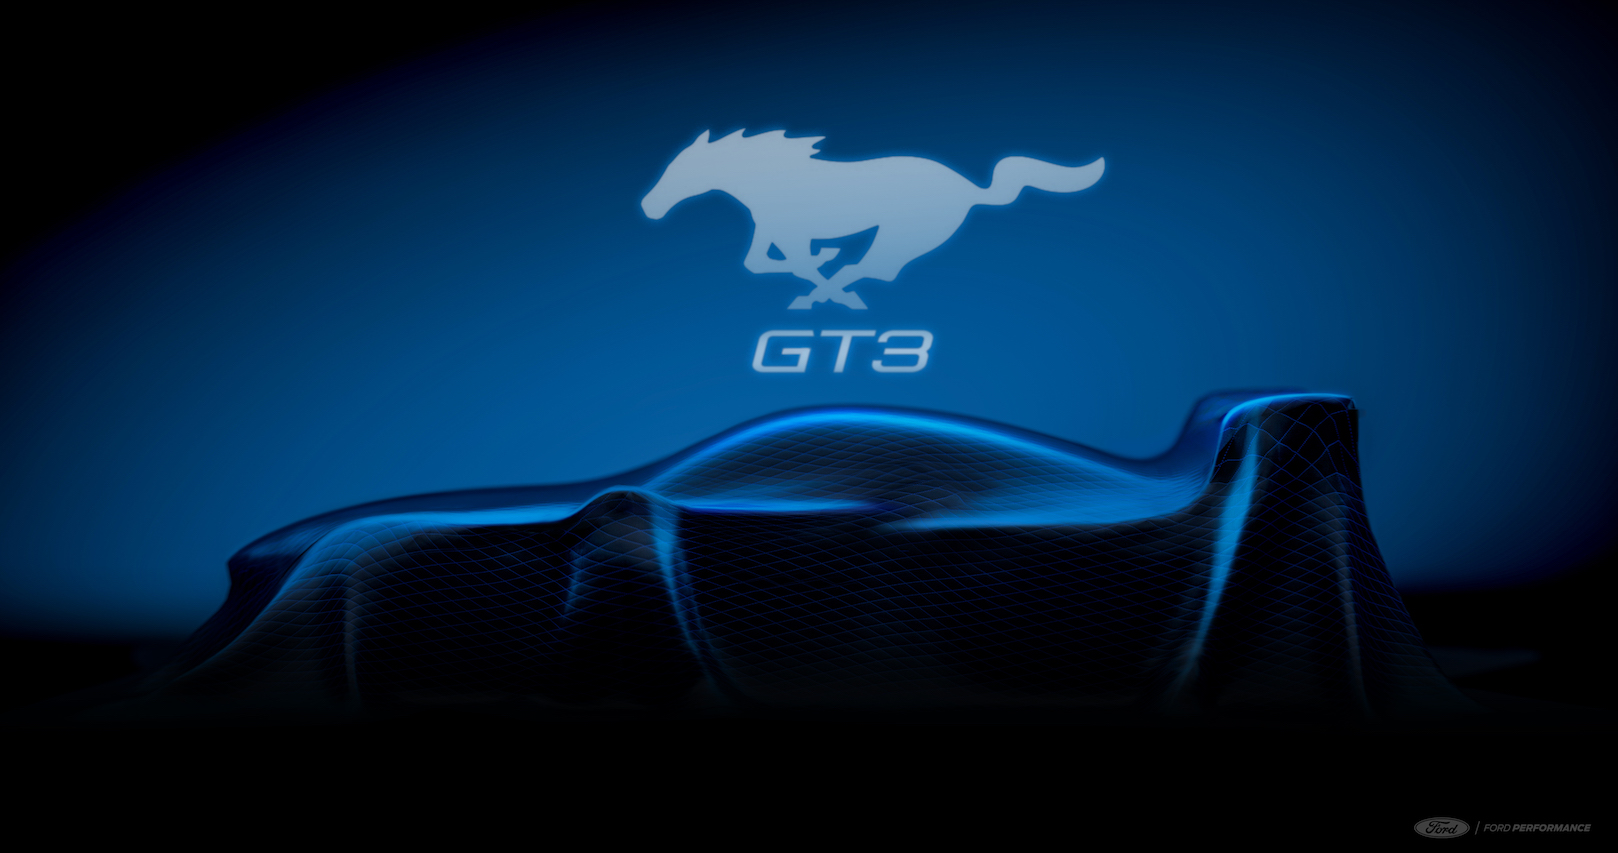 Ford regresa a las carreras GT3 con el nuevo Mustang® GT3